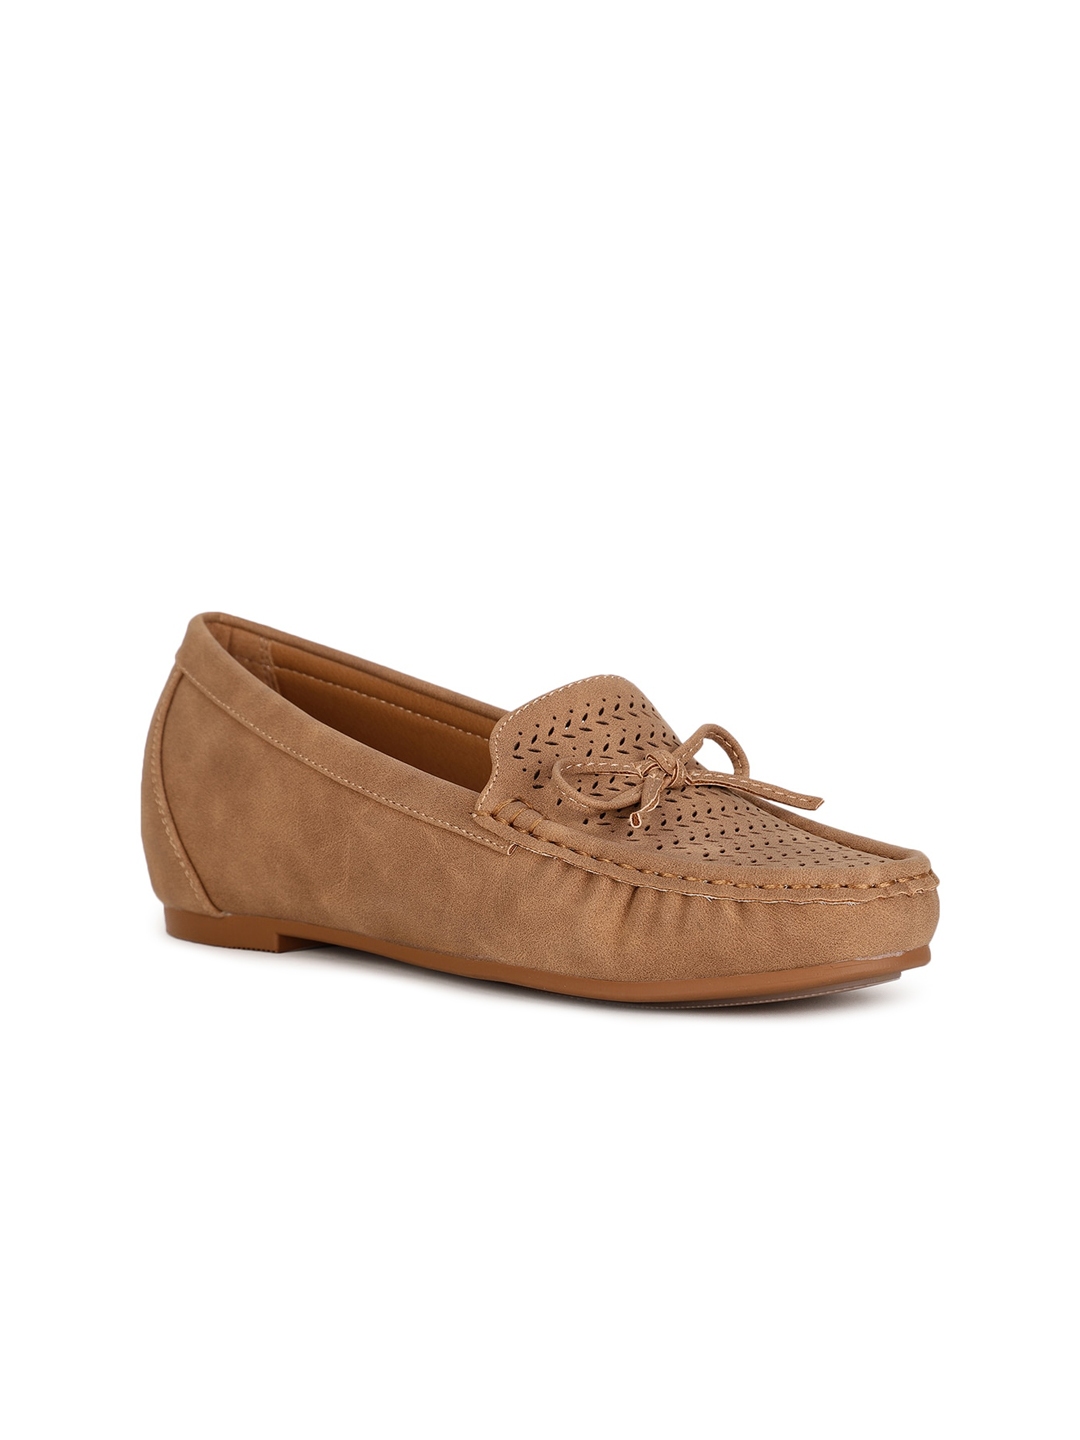 Buy Bata Women Tan Loafers - Casual Shoes for Women 19303522 | Myntra